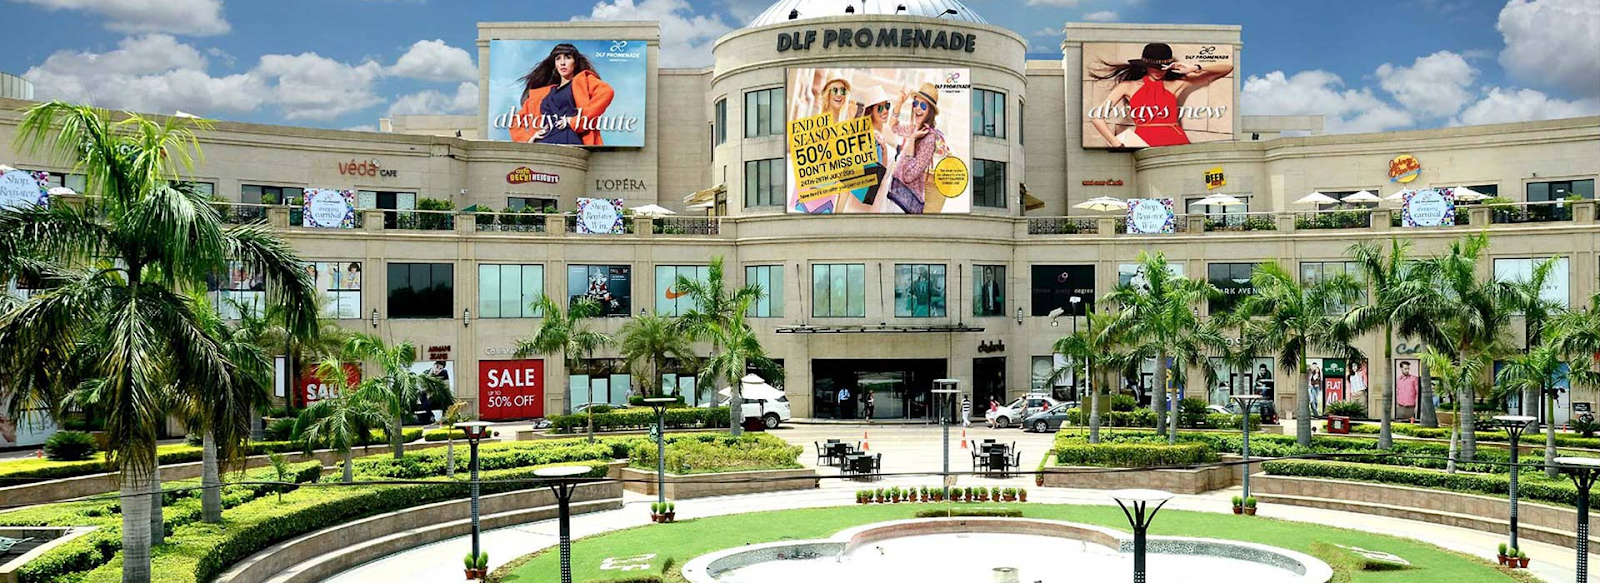  DLF Promenade Mall 